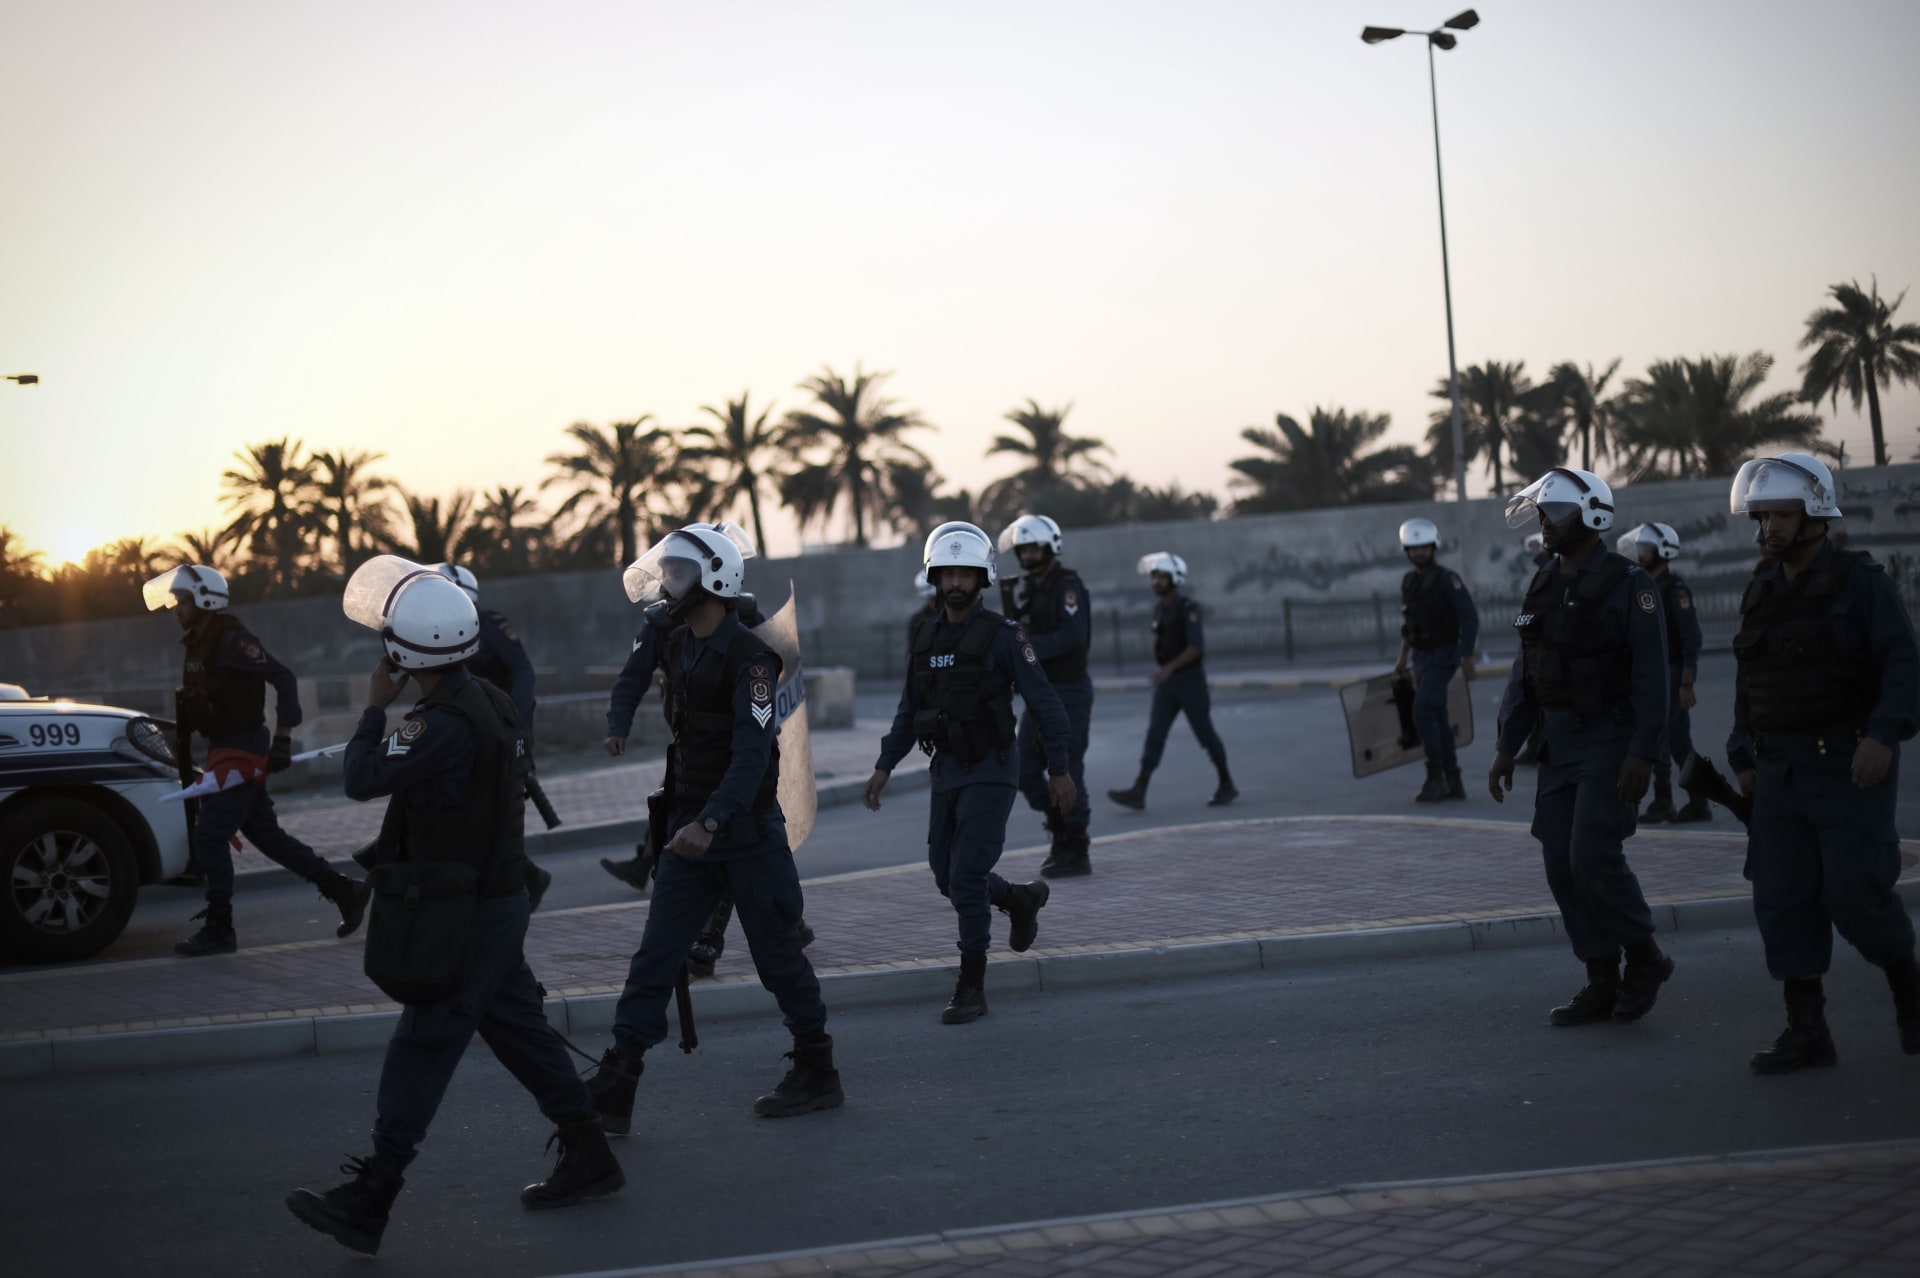 البحرين: إحباط محاولة تهريب مطلوبين فرّوا من سجن "جو" بعد هجوم مسلح الشهر الماضي